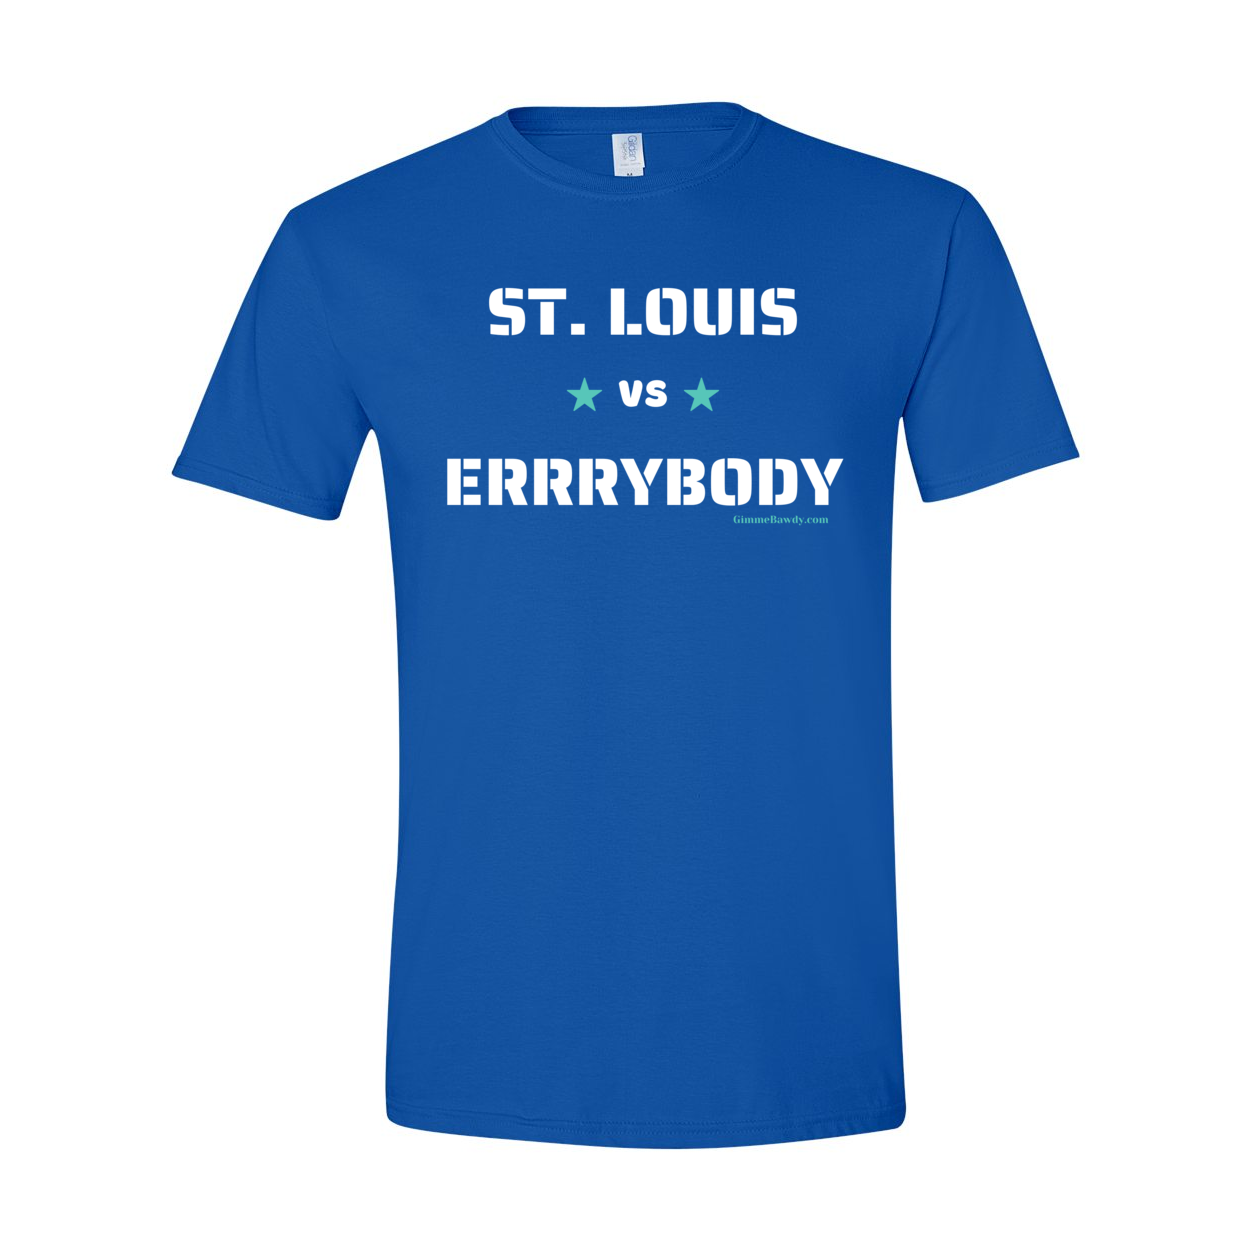 St. Louis vs ERRRYBODY